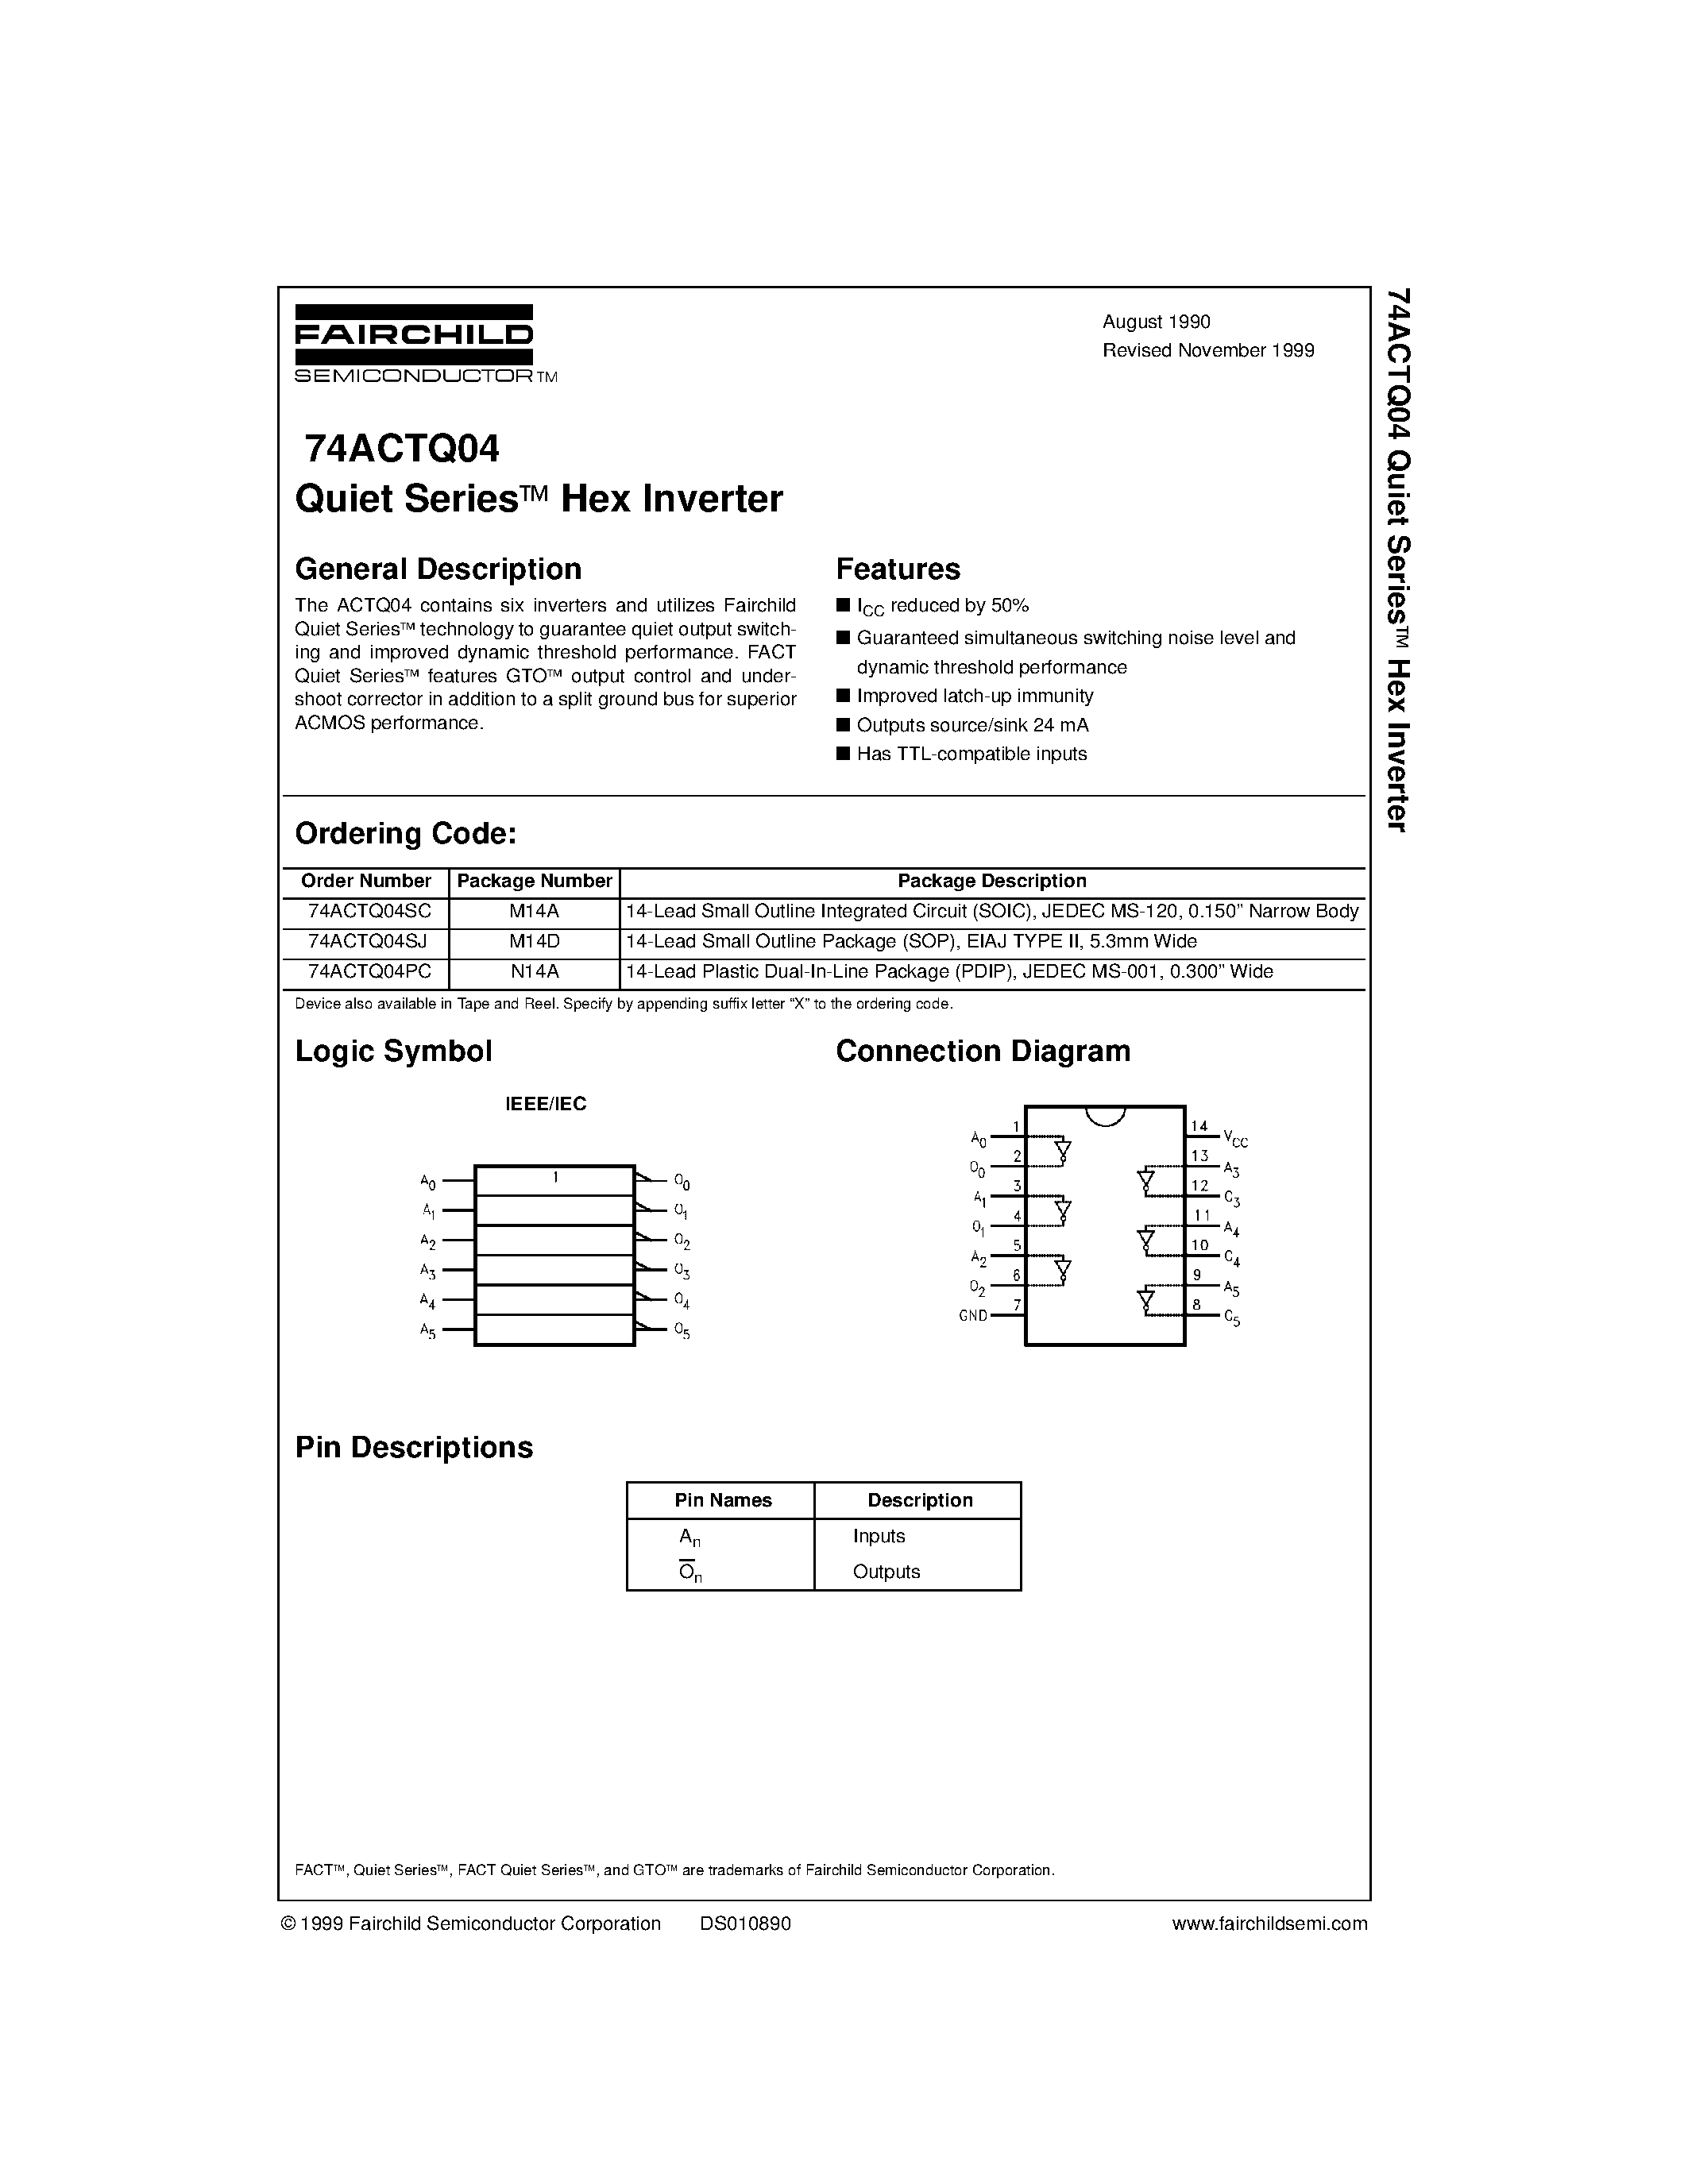 Datasheet 74ACTQ04 - Quiet Series Hex Inverter page 1